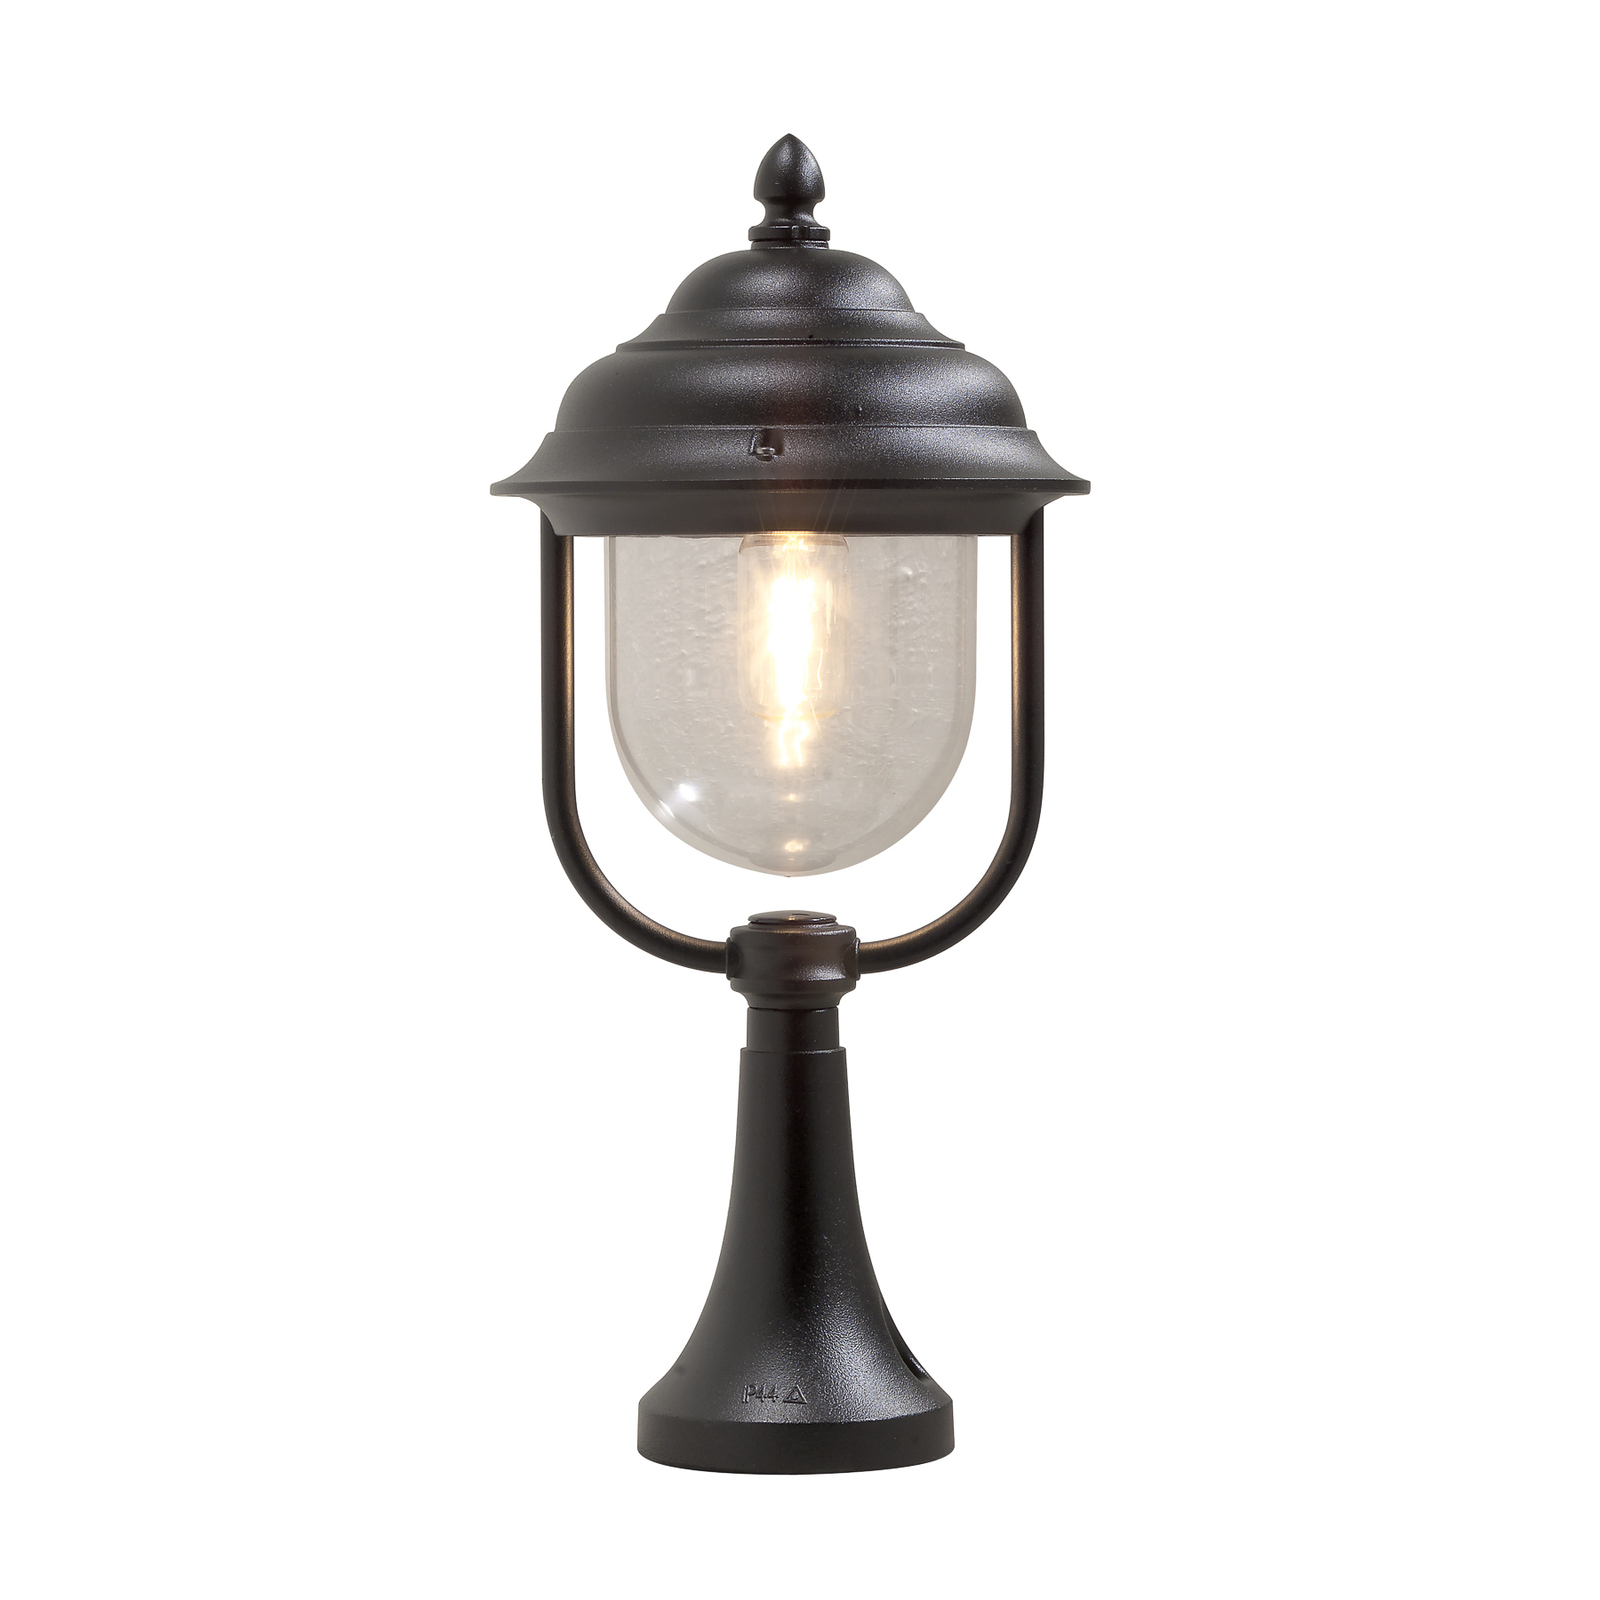 Bellissima lampada con piedistallo Parma, nera